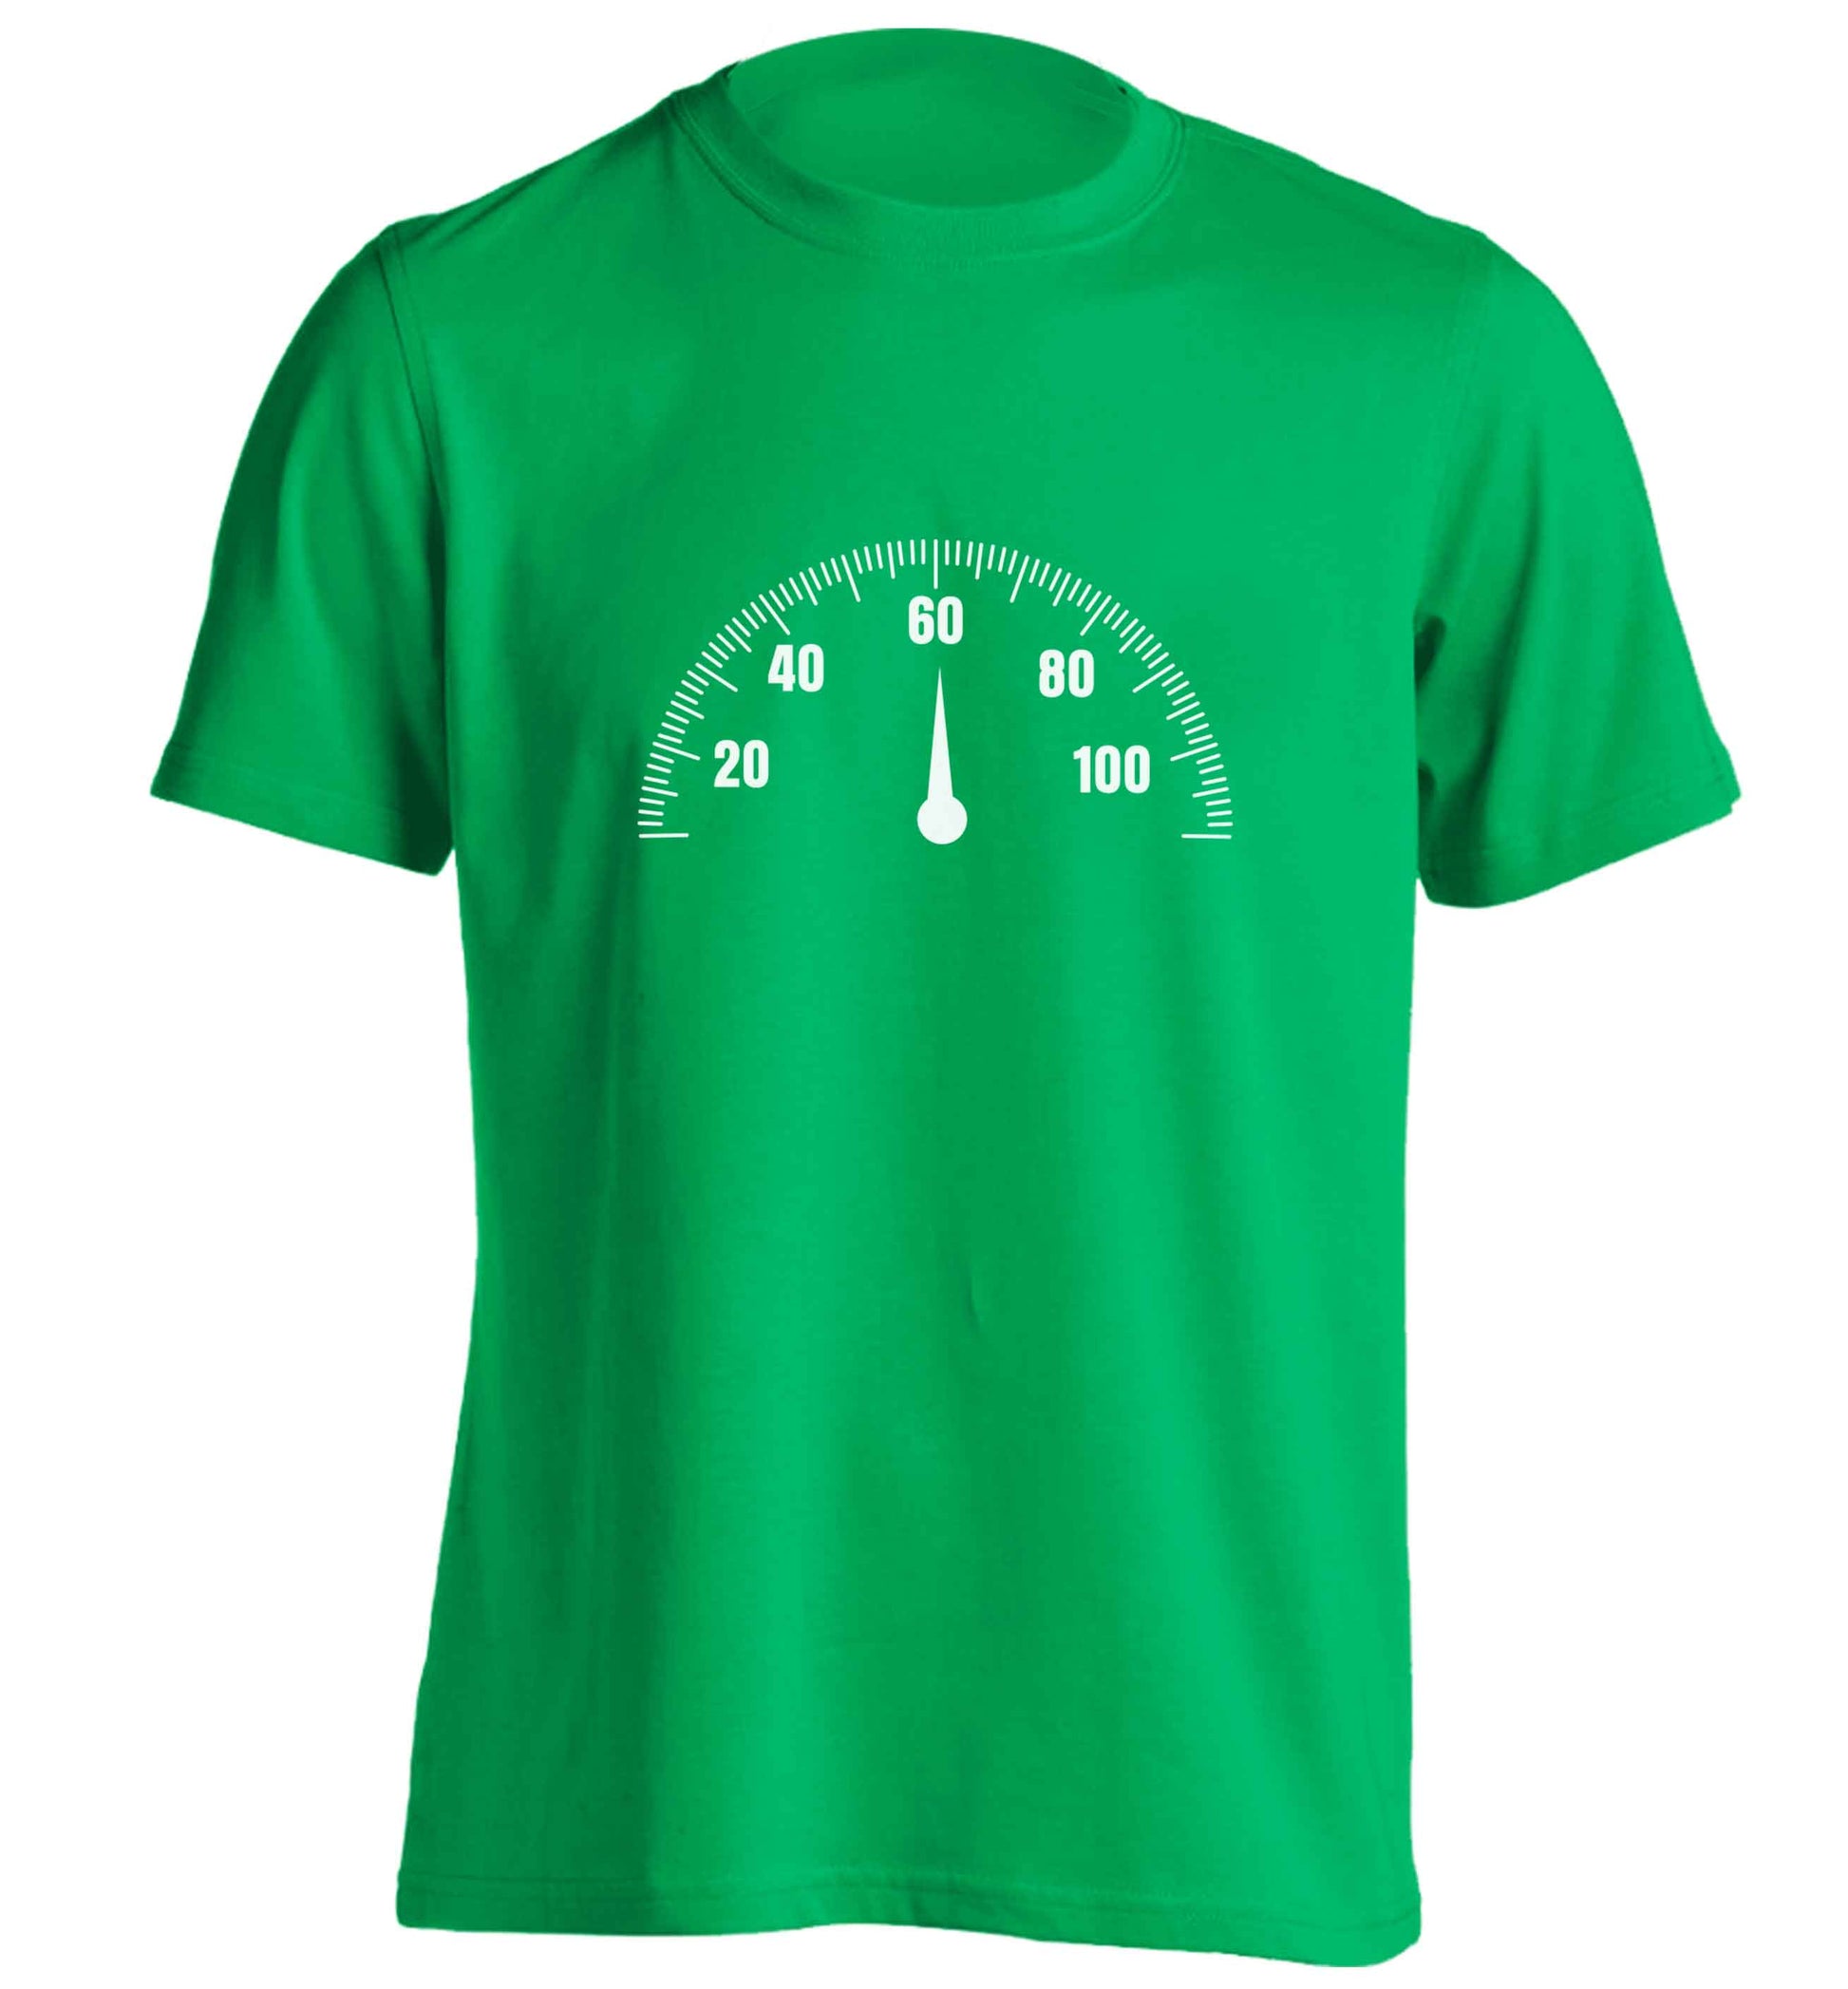 60th Birthday speedial adults unisex green Tshirt 2XL